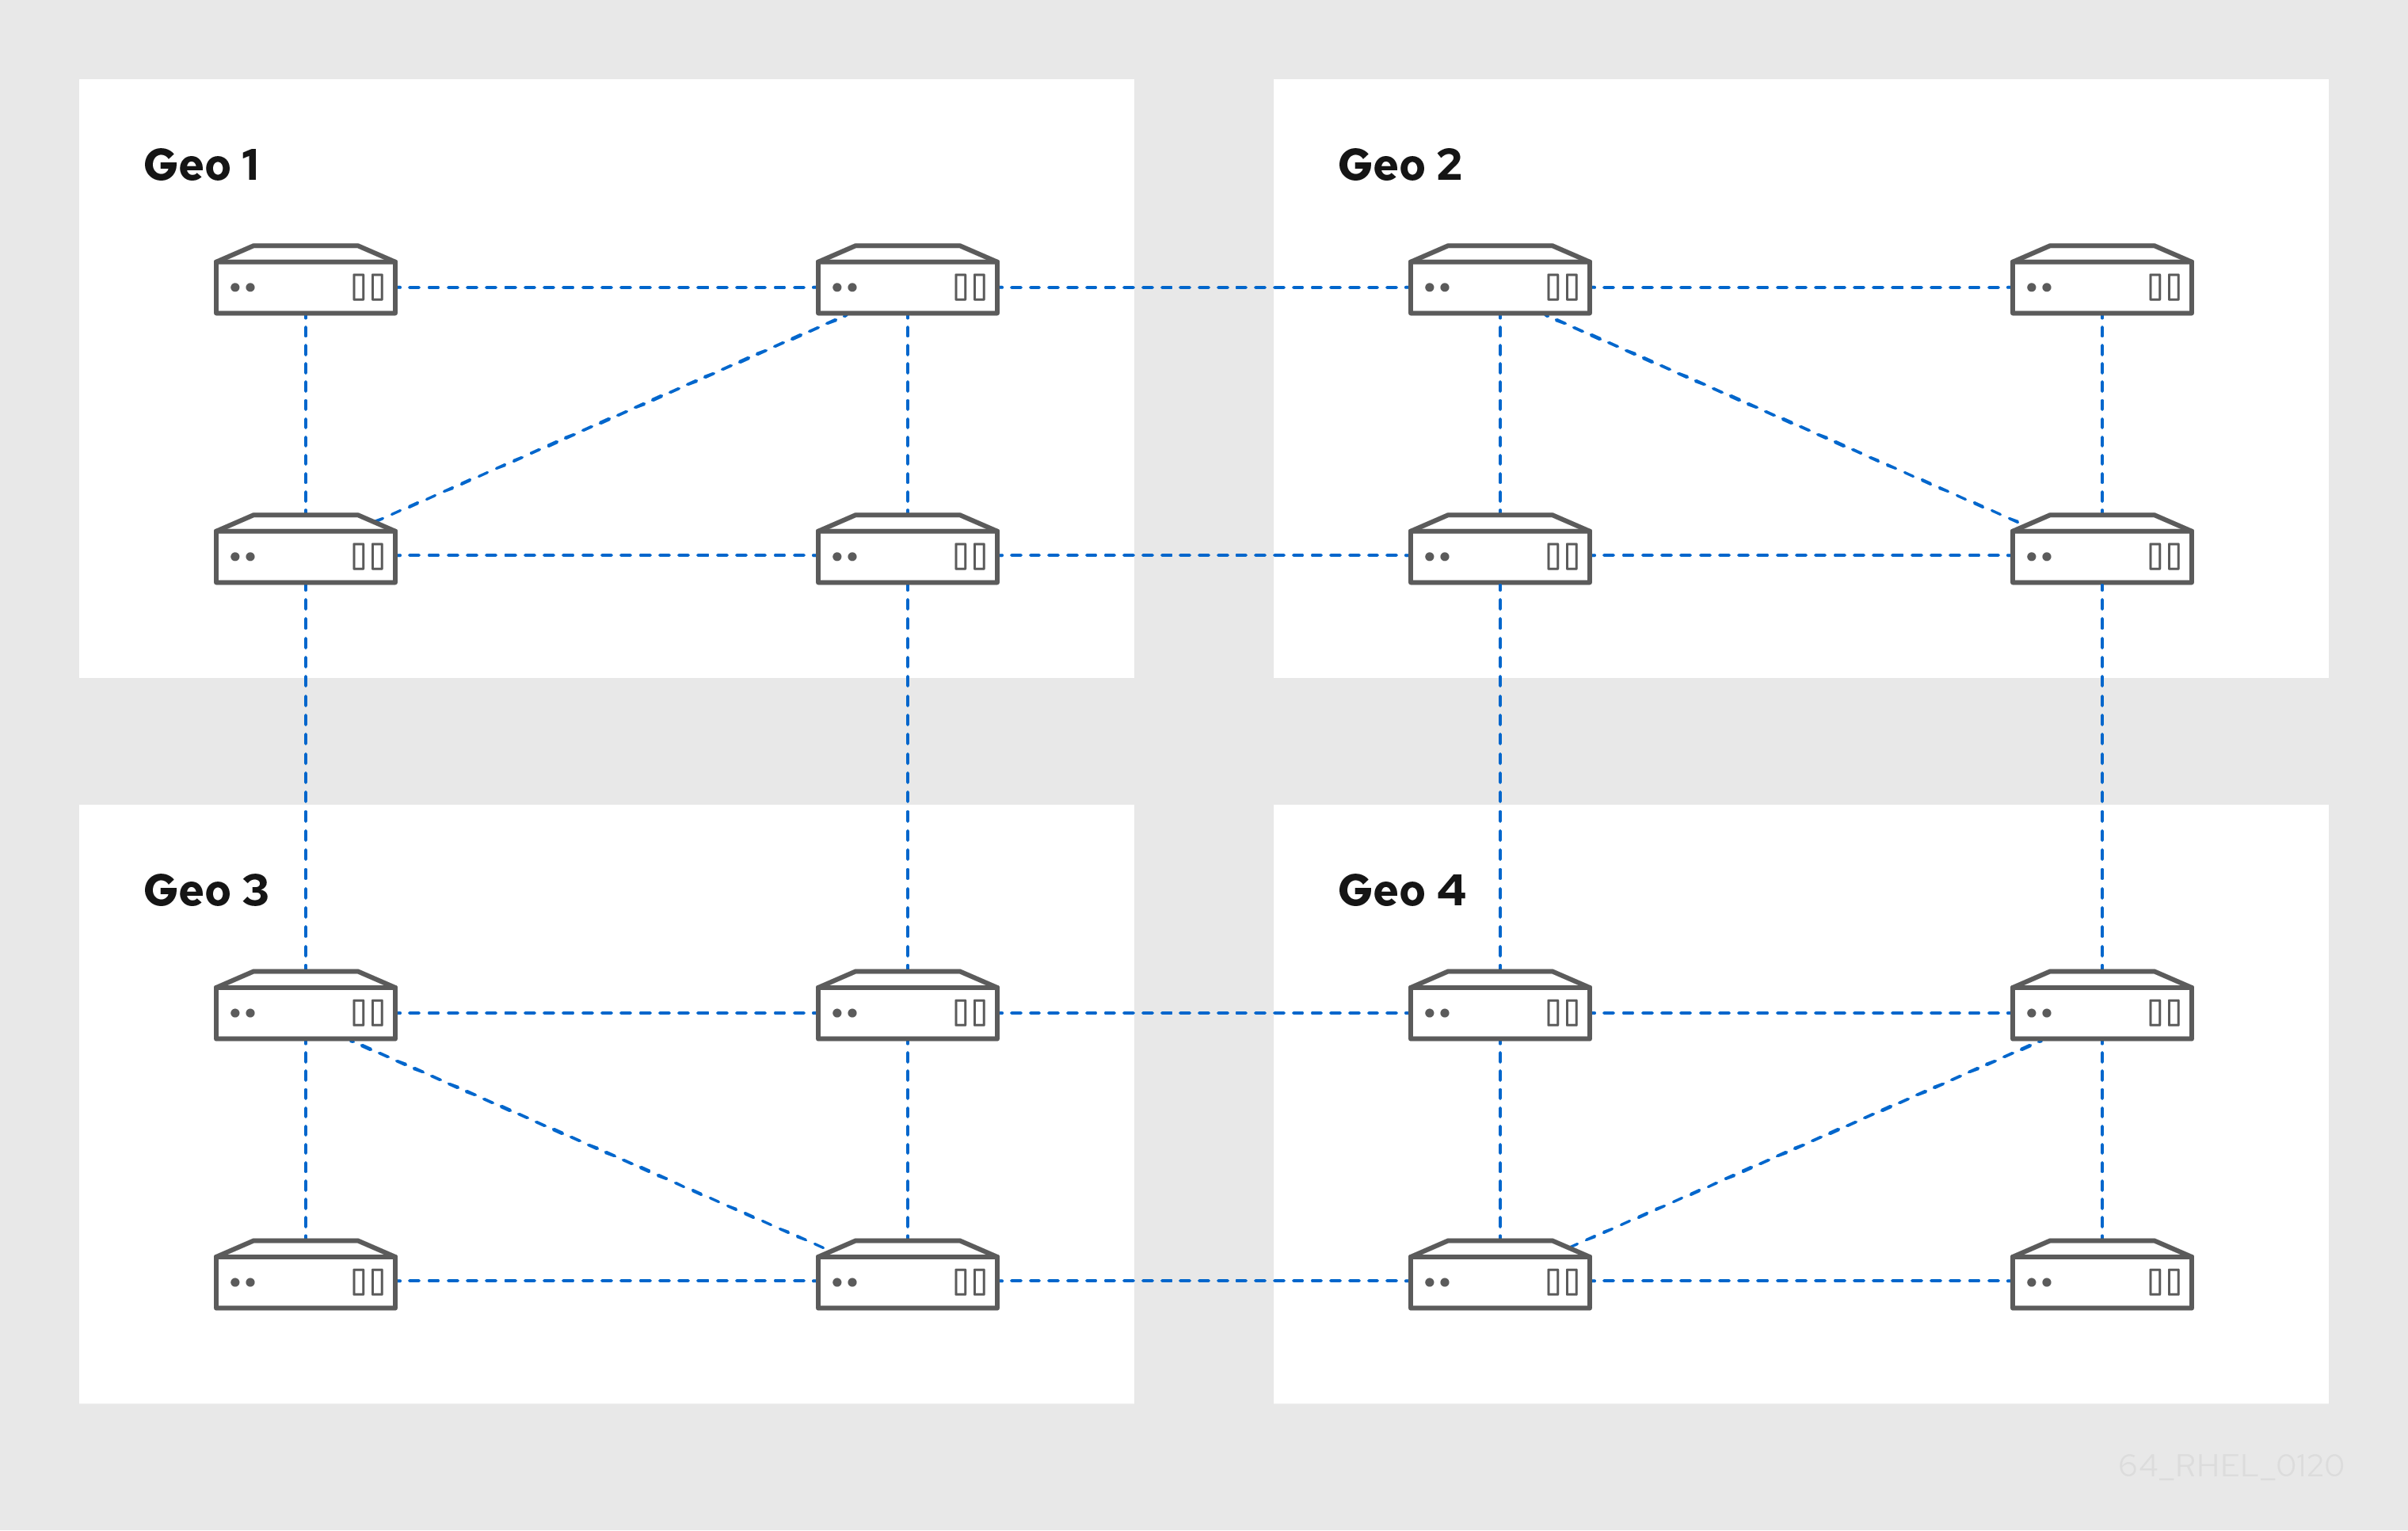 4개의 데이터 센터 - Geo 1 ~ 4를 보여주는 다이어그램. 각 데이터 센터에는 복제 계약을 통해 서로 연결된 네 대의 서버가 있습니다. Geo 2에는 Geo 1에서 두 개의 서버로 두 서버를 연결하는 복제 계약도 있습니다. 이 패턴은 Geo 3의 두 개 서버와 Geo 4에 연결된 Geo 3의 두 서버에 연결된 Geo 2의 두 서버를 계속 지원합니다. 각 데이터 센터가 연결되어 있으므로 각 서버는 다른 Geo로부터 최대 3개의 홉을 홉니다.